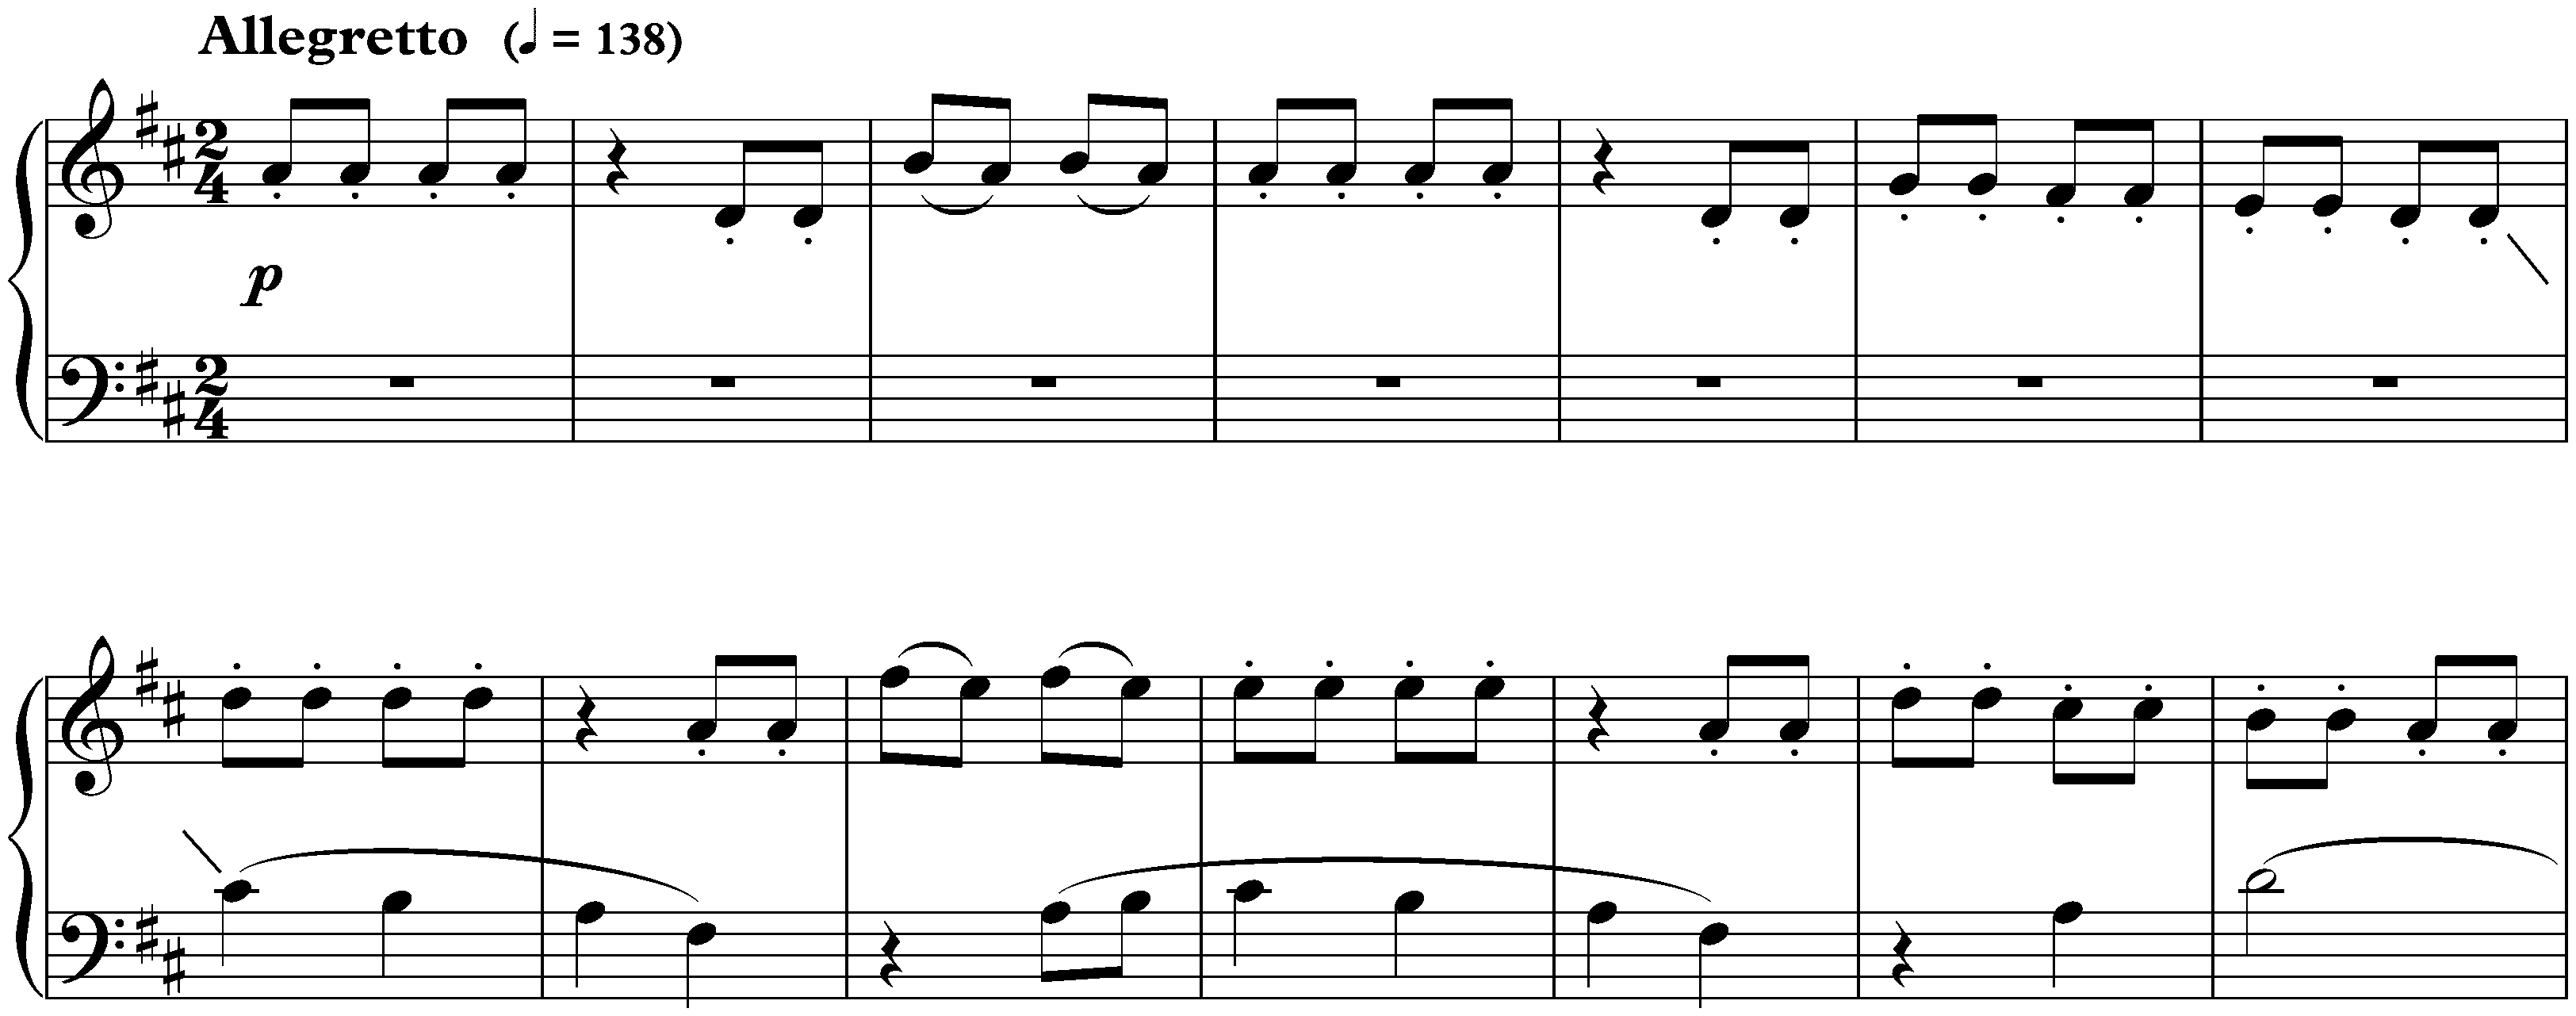 Twenty-four Preludes and Fugues, op. 87; 5. D major, Fugue